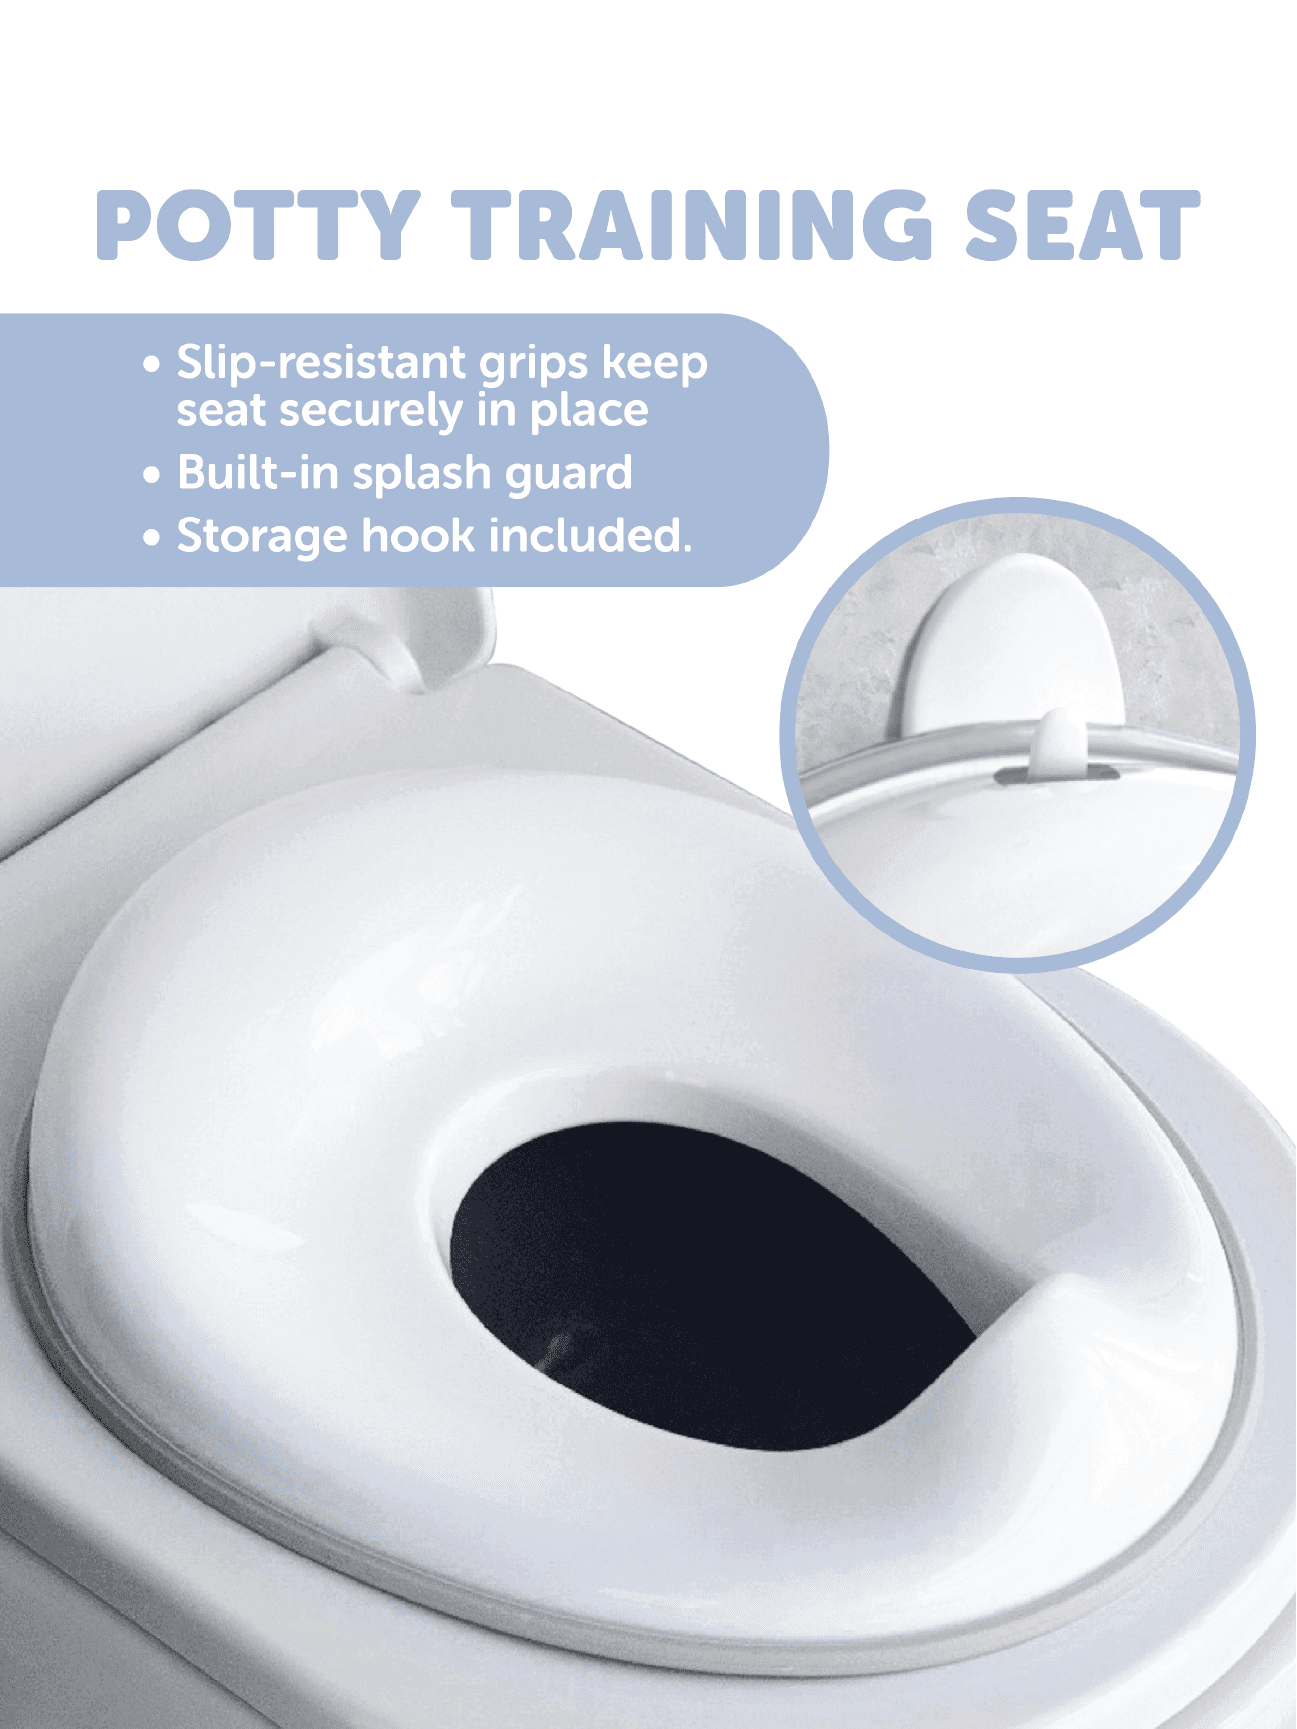 WC d'apprentissage WC Potty XL - N/A - Kiabi - 30.49€